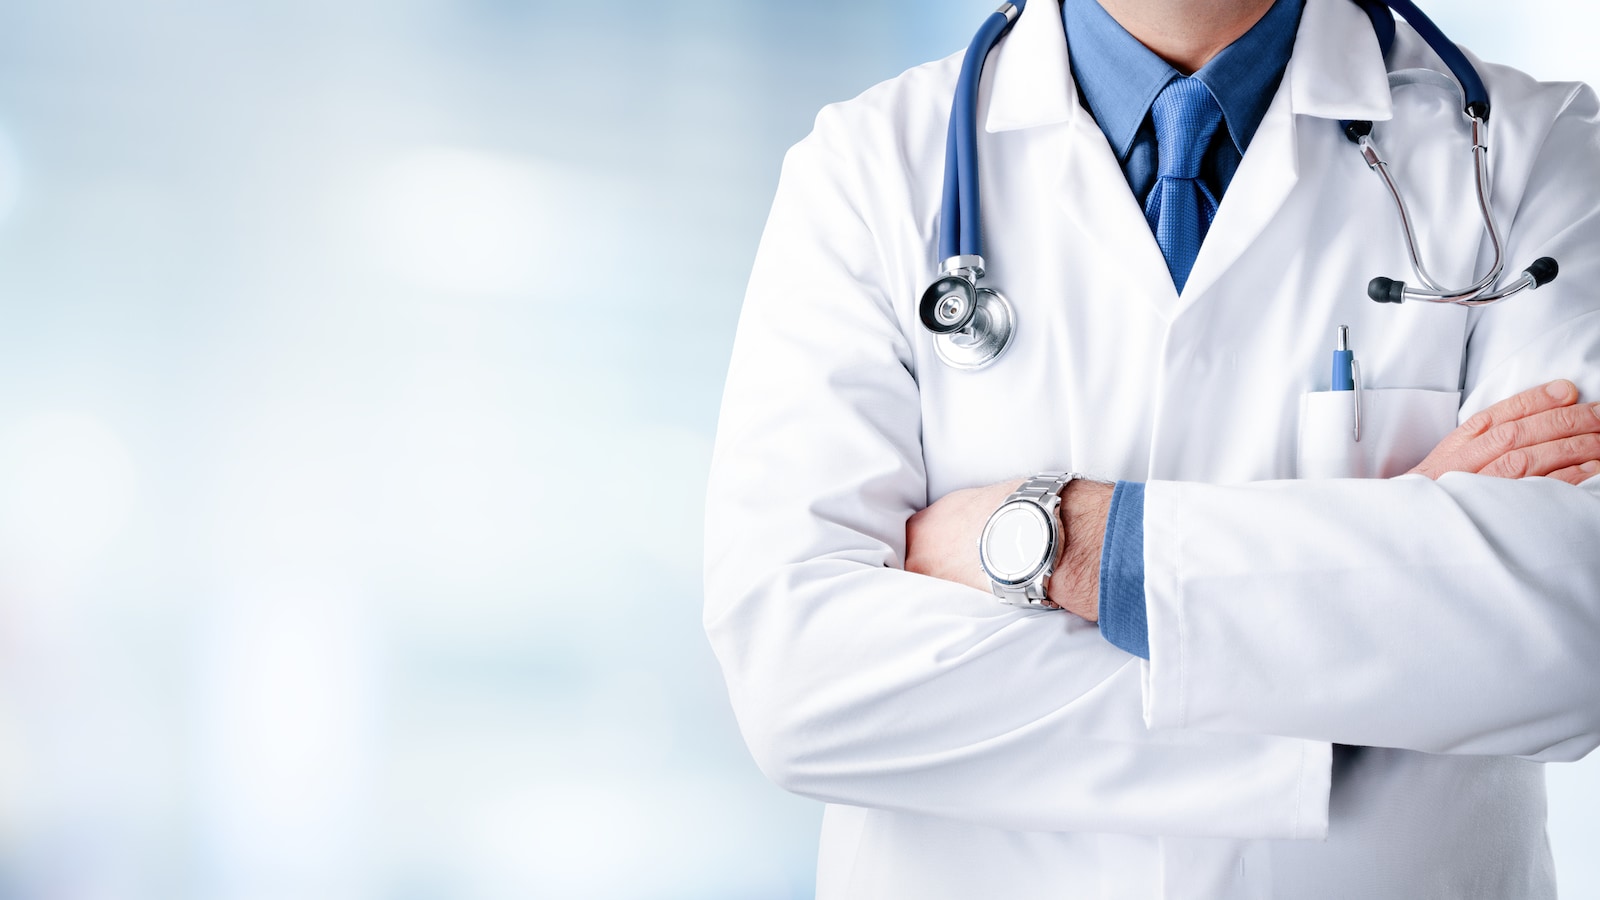 Tunisie: Le syndicat des médecins, pharmaciens et dentistes appelle le gouvernement à faire de nouveaux recrutements